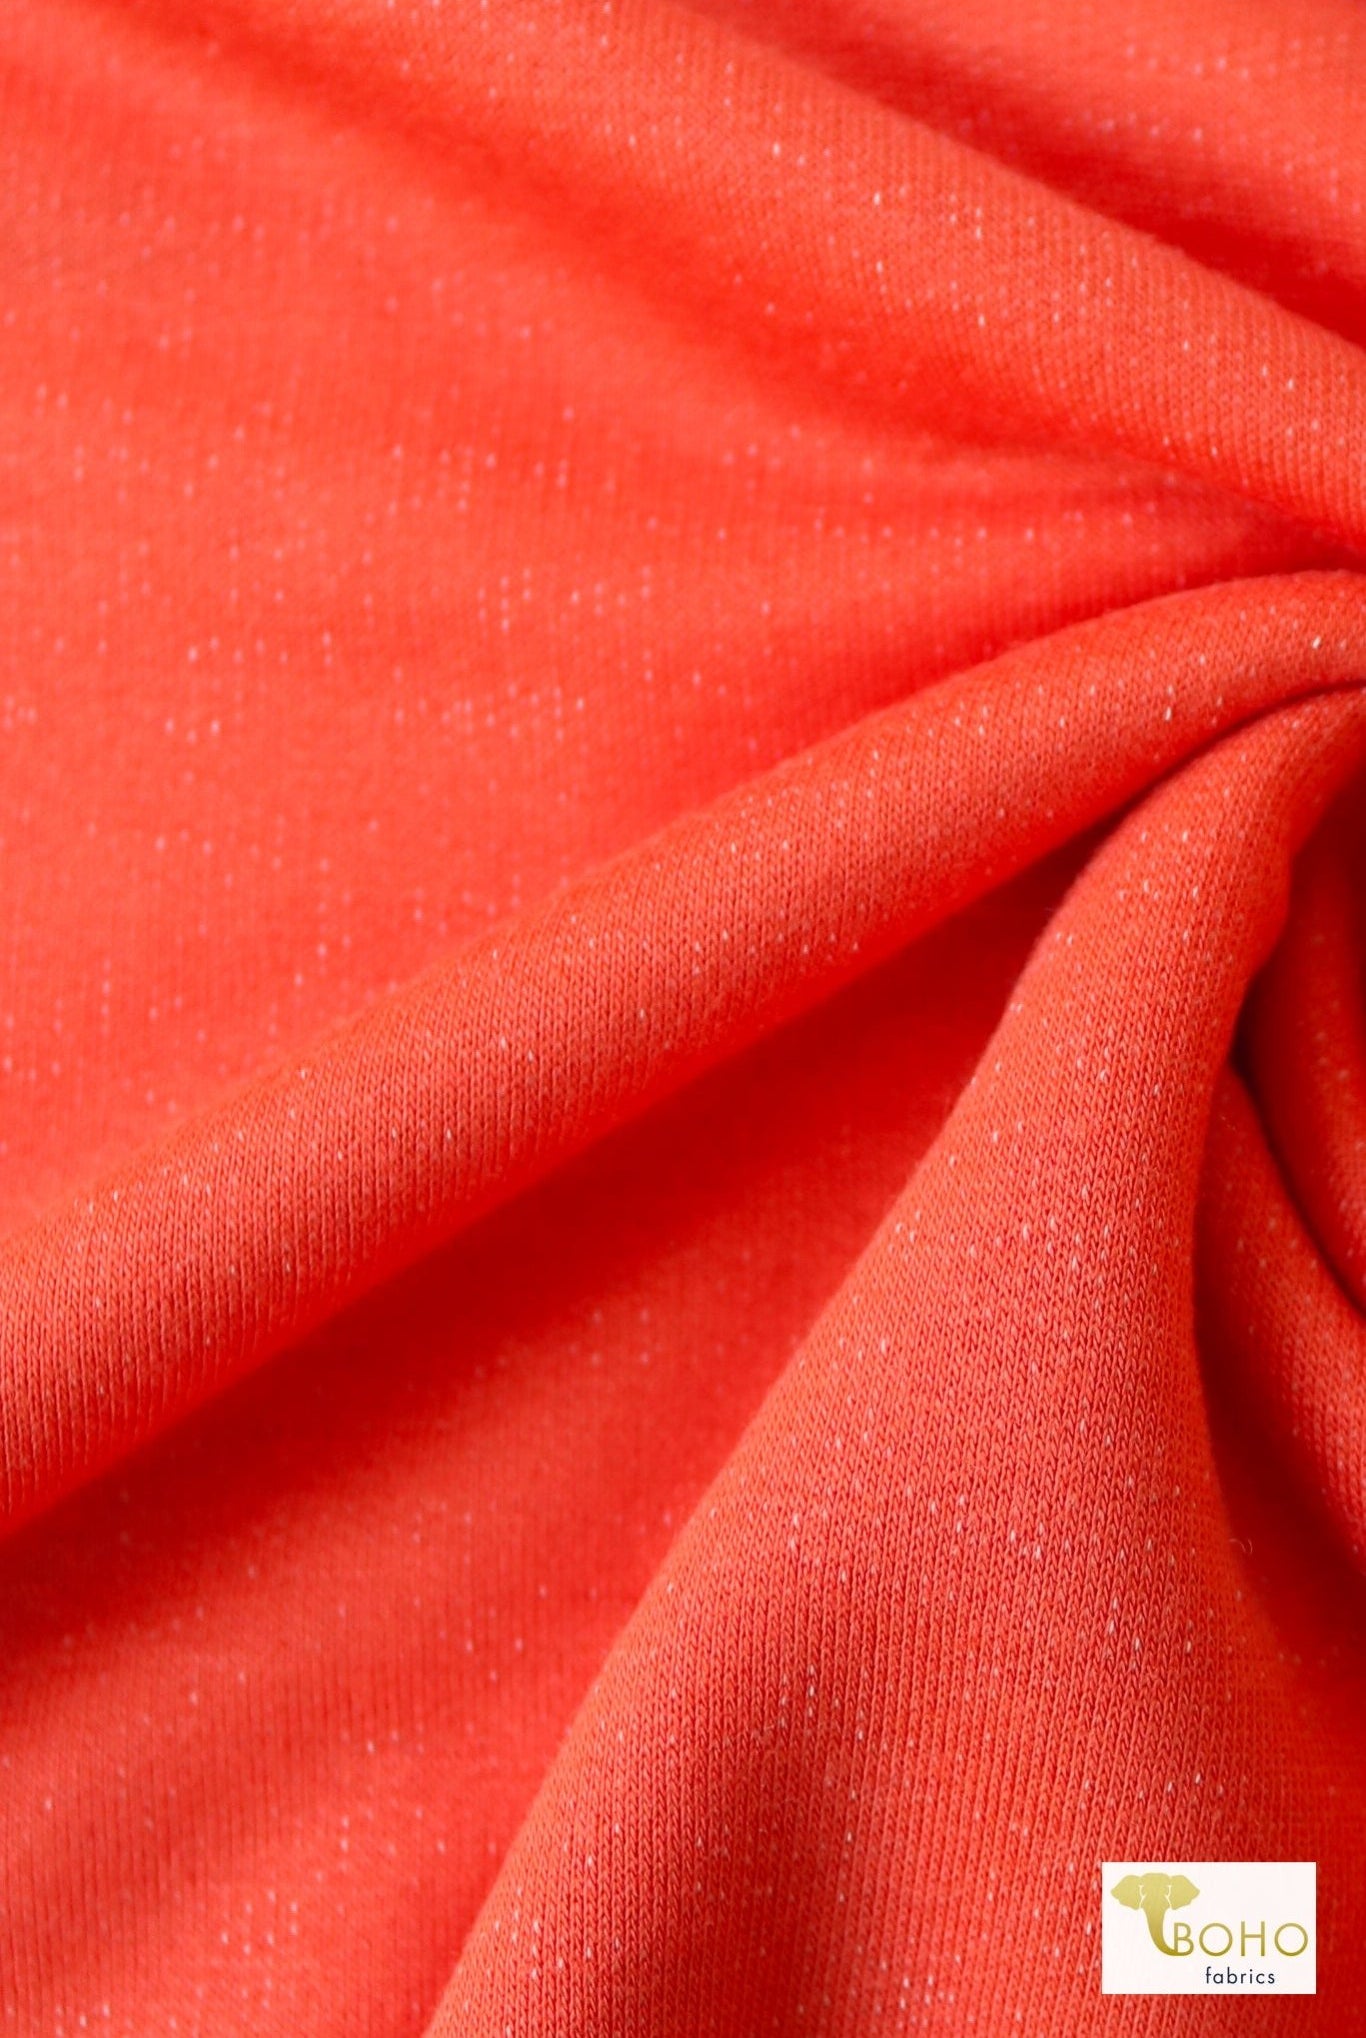 Atomic Orange, French Terry Solid Knit - Boho Fabrics